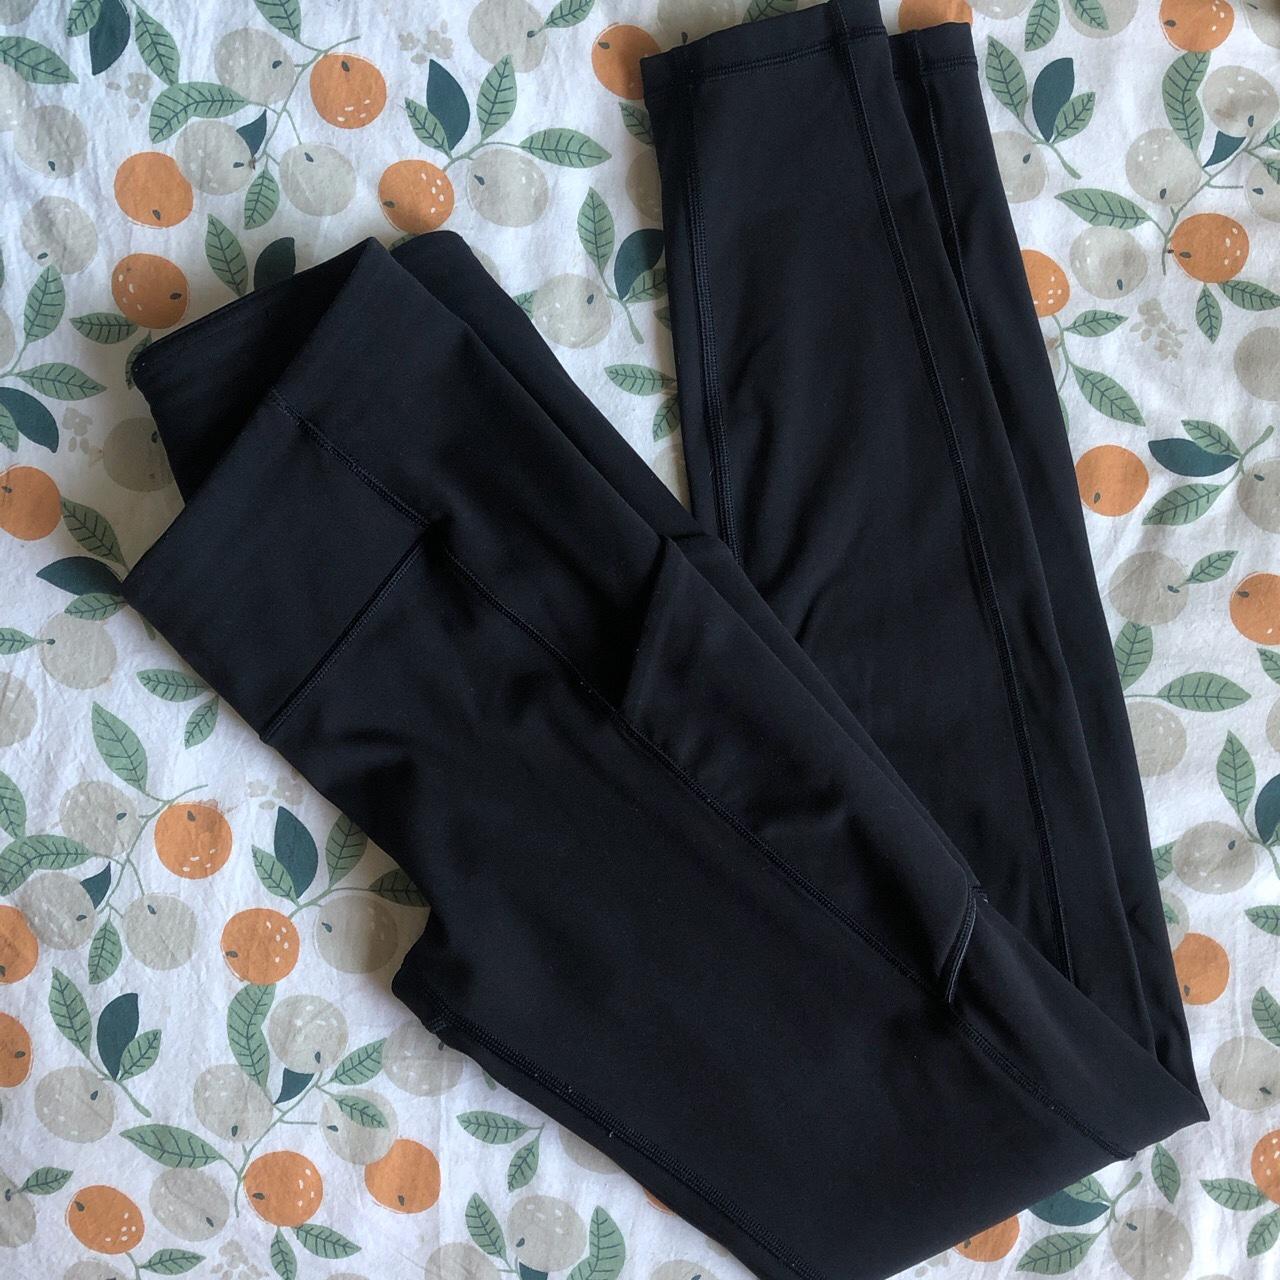 Lululemon black leggings (with pockets✨), size 4